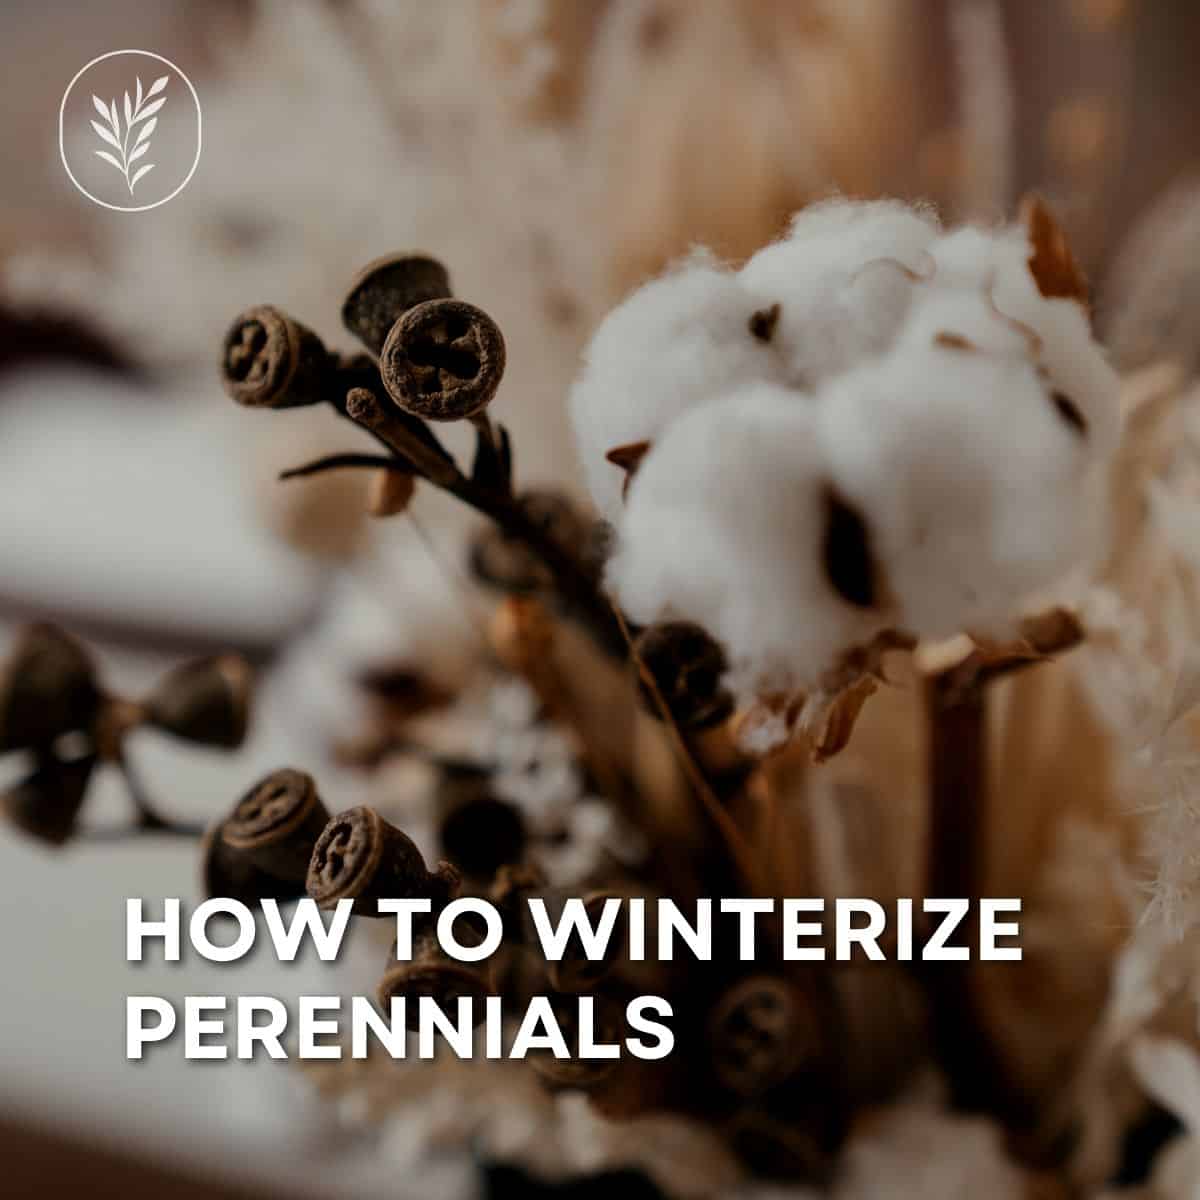 How to winterize perennials via @home4theharvest